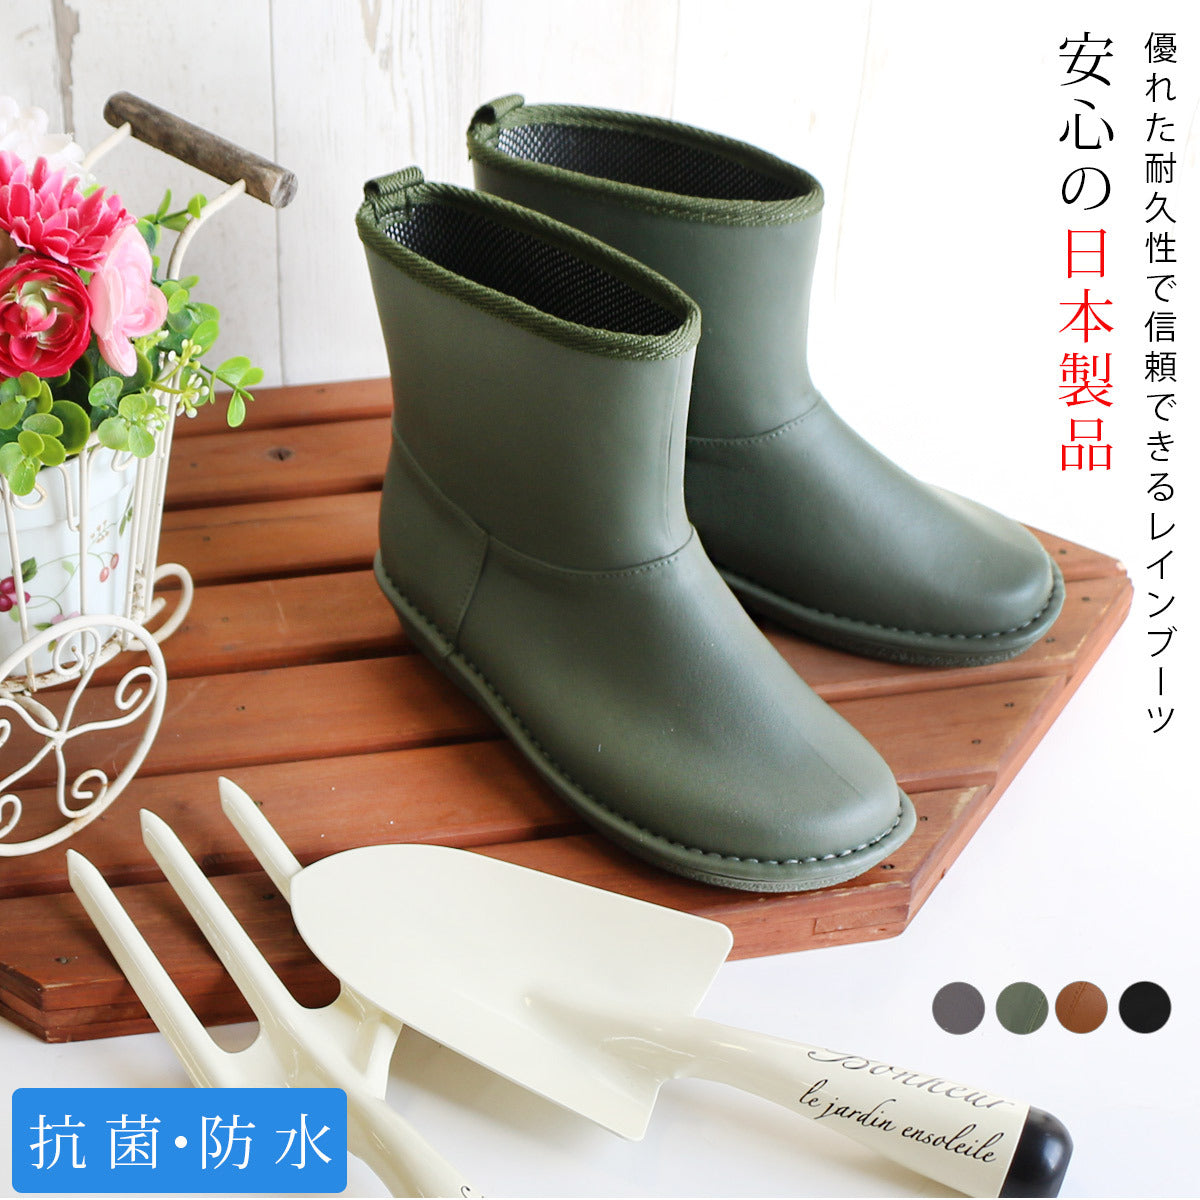 🇯🇵日本 CHARMING 日本製短雨靴 Short Rain Boot 安心の日本製ショート丈ラバーブーツ 突然の雨にも安心